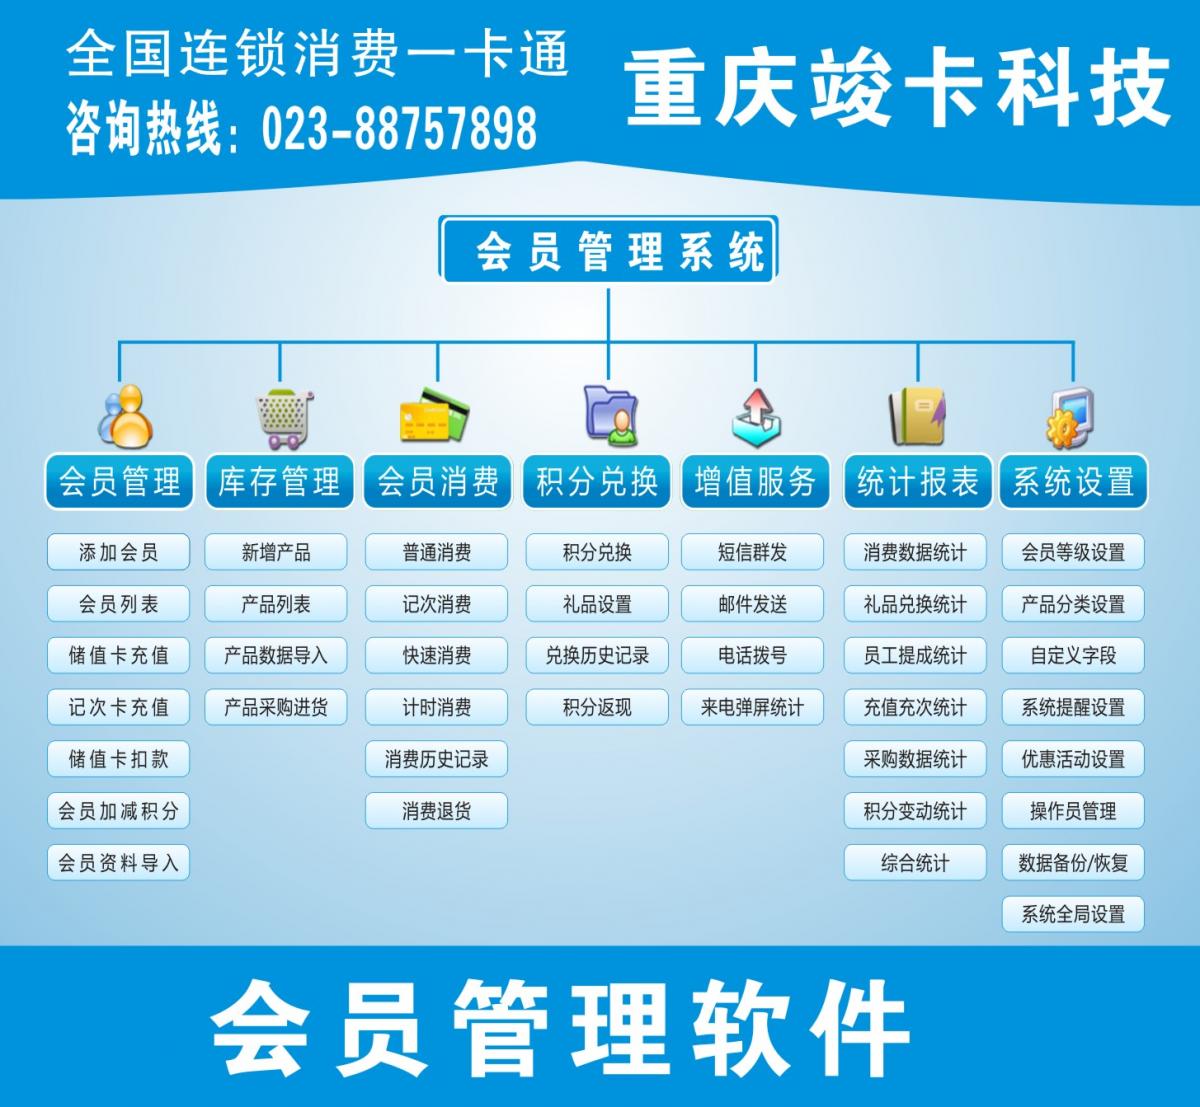 重庆专业做卡、重庆会员系统